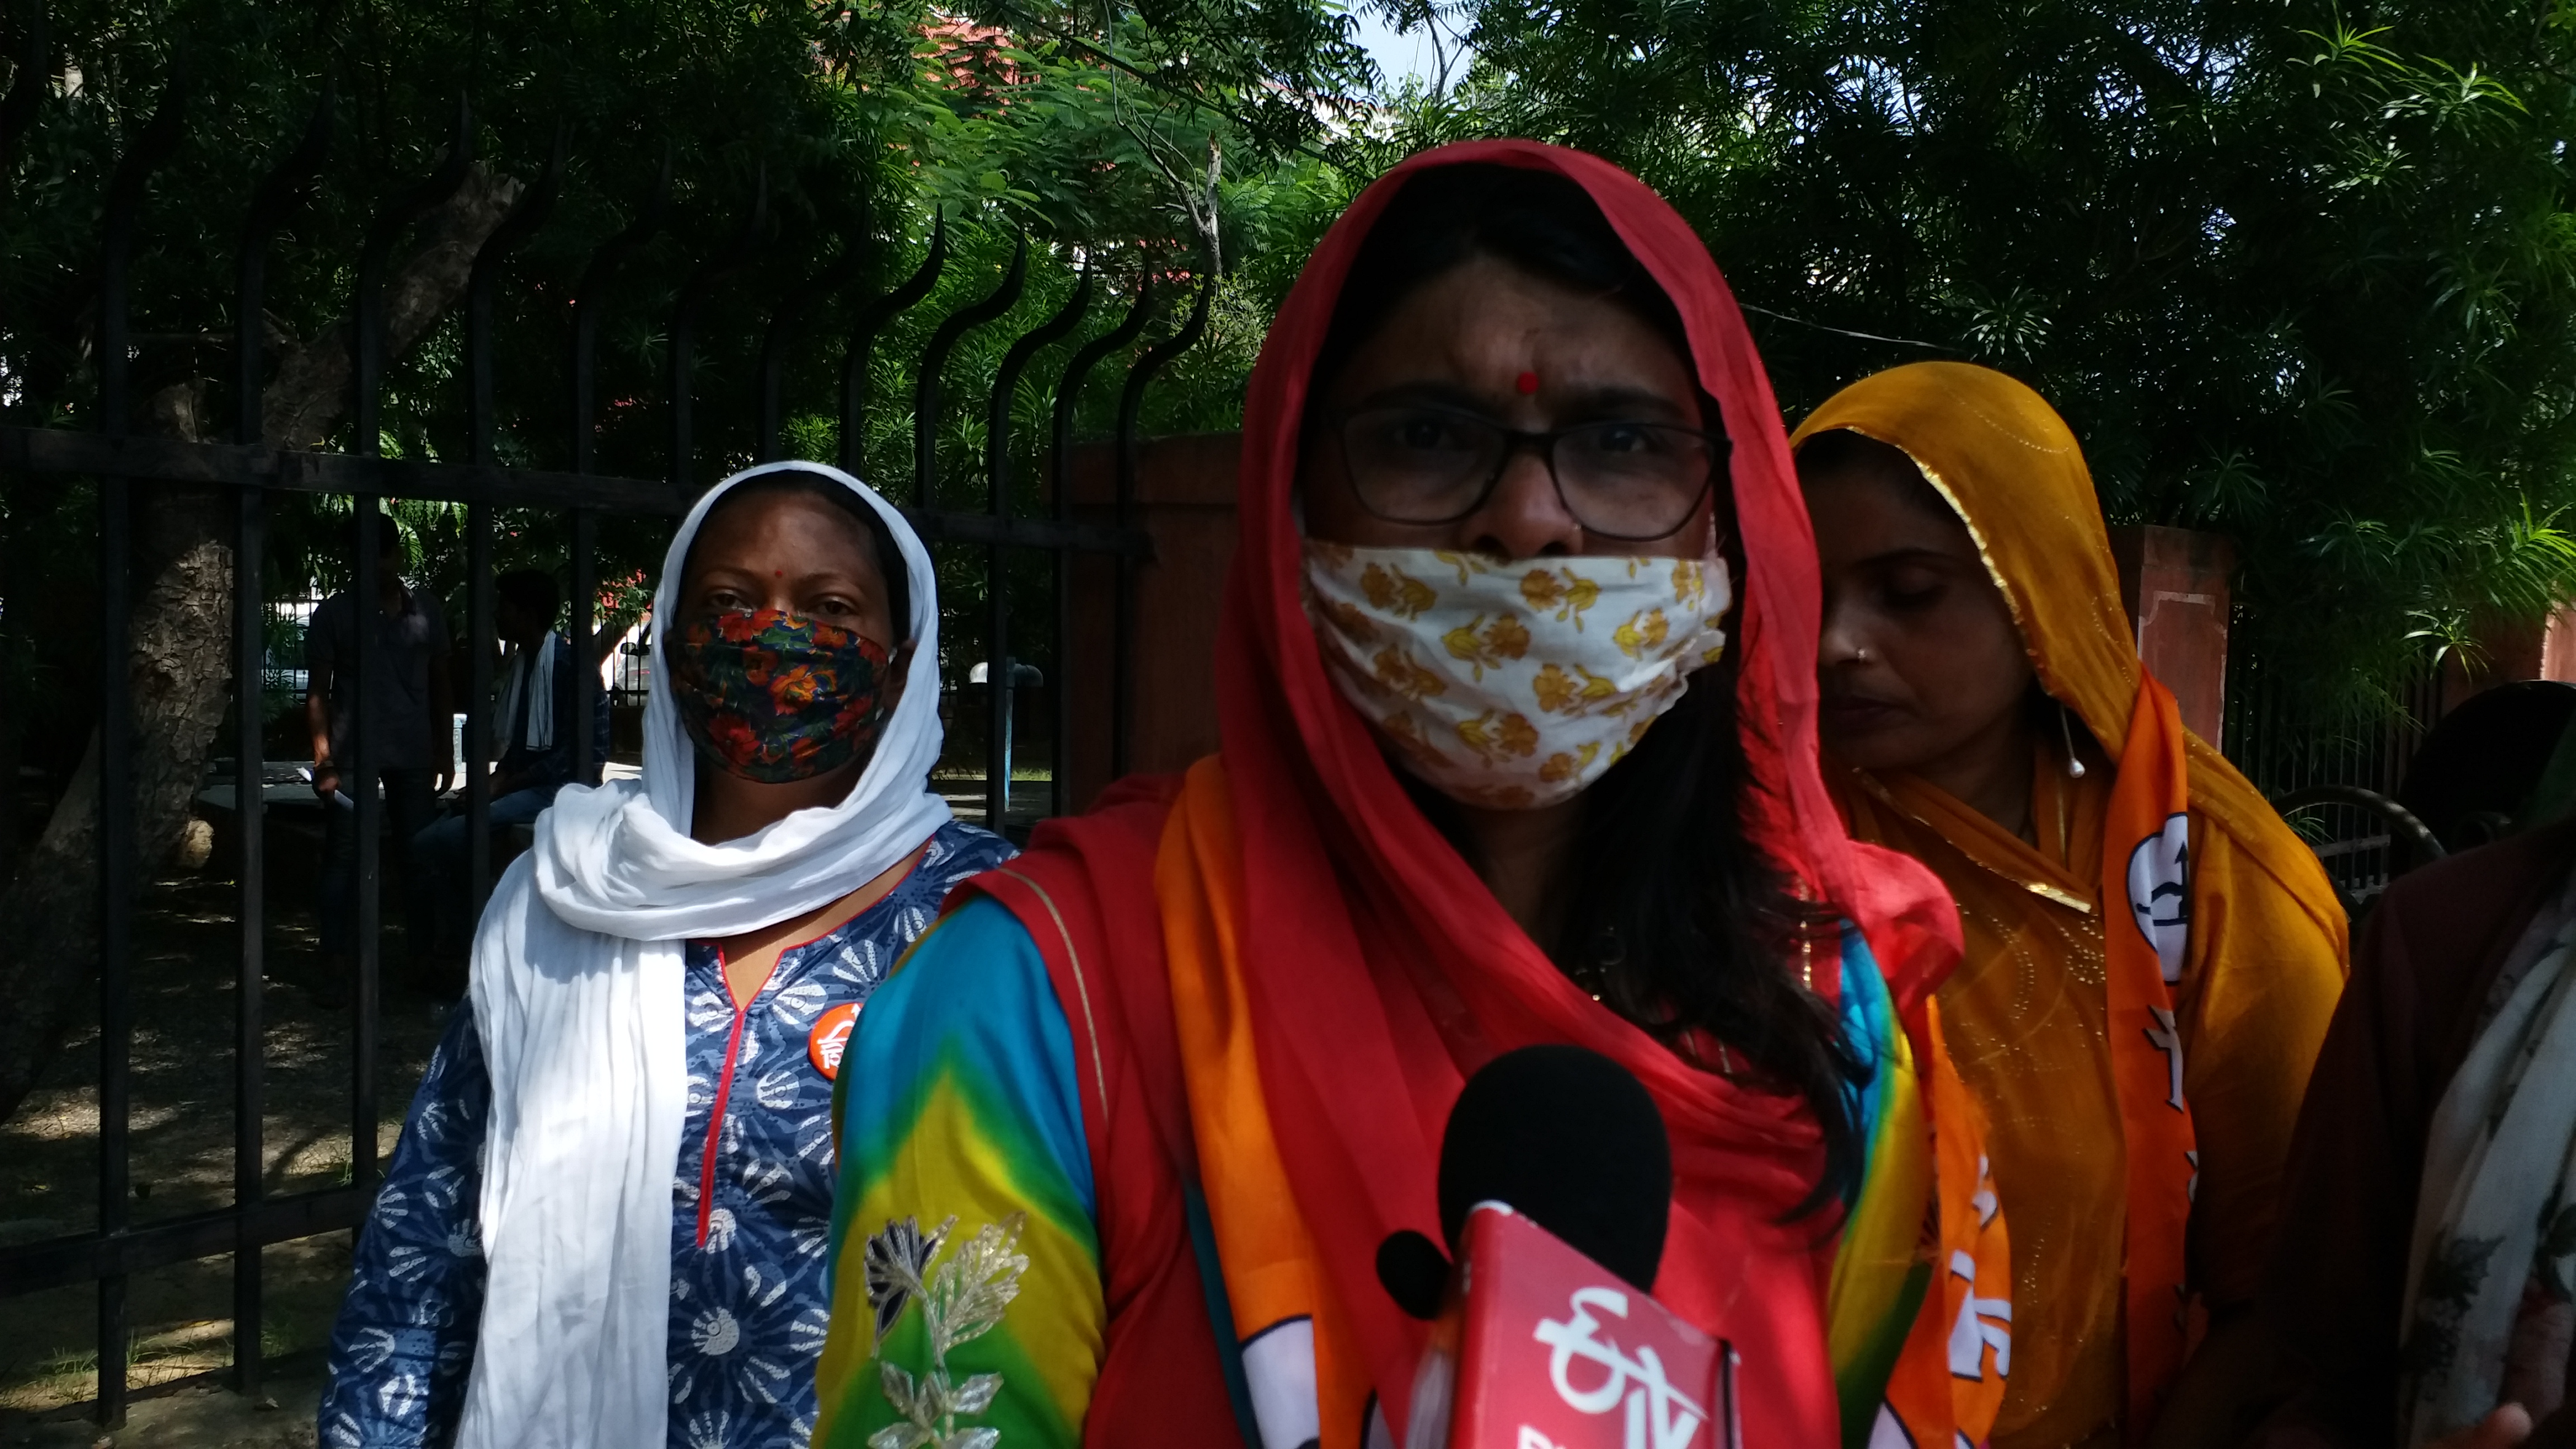 بالی وڈ کی معروف اداکارہ اور کوئین کے نام سے جانی جانے والی کنگنا رناؤت ممبئی میں چھ روز قیام کے بعد ہماچل پہنچ گئی ہیں جس کے بعد آج ان کے خلاف احتجاجی مظاہرہ کیا گیا